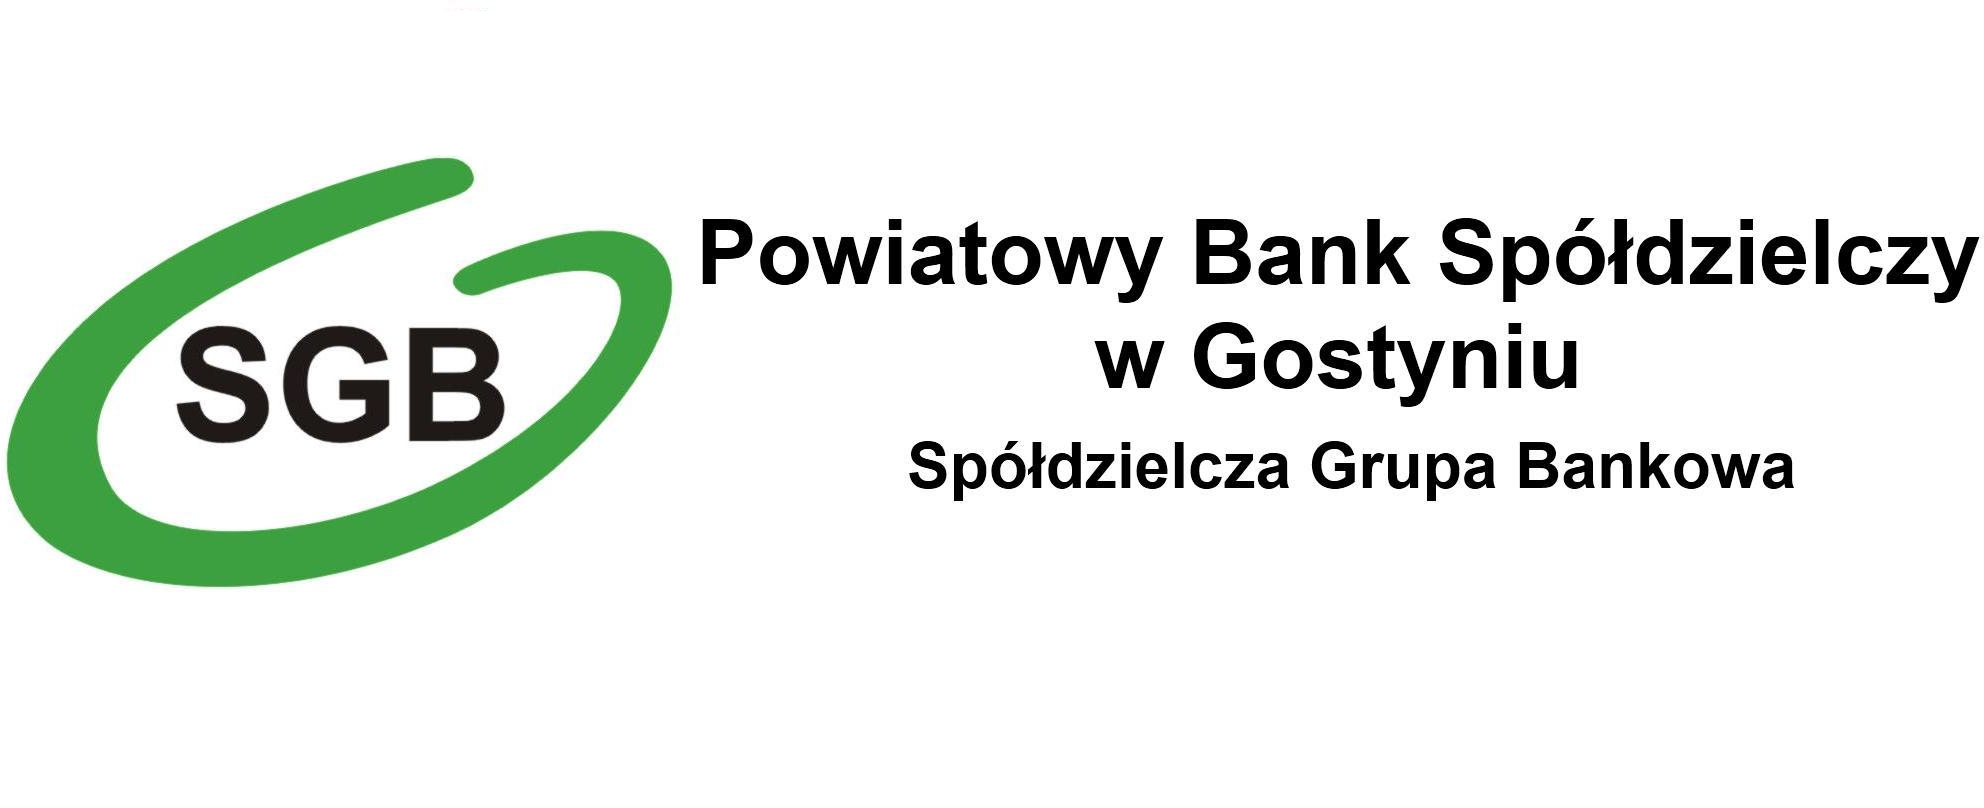 Kursy Walut PBS w Gostyniu - Powiatowy Bank Spółdzielczy w Gostyniu